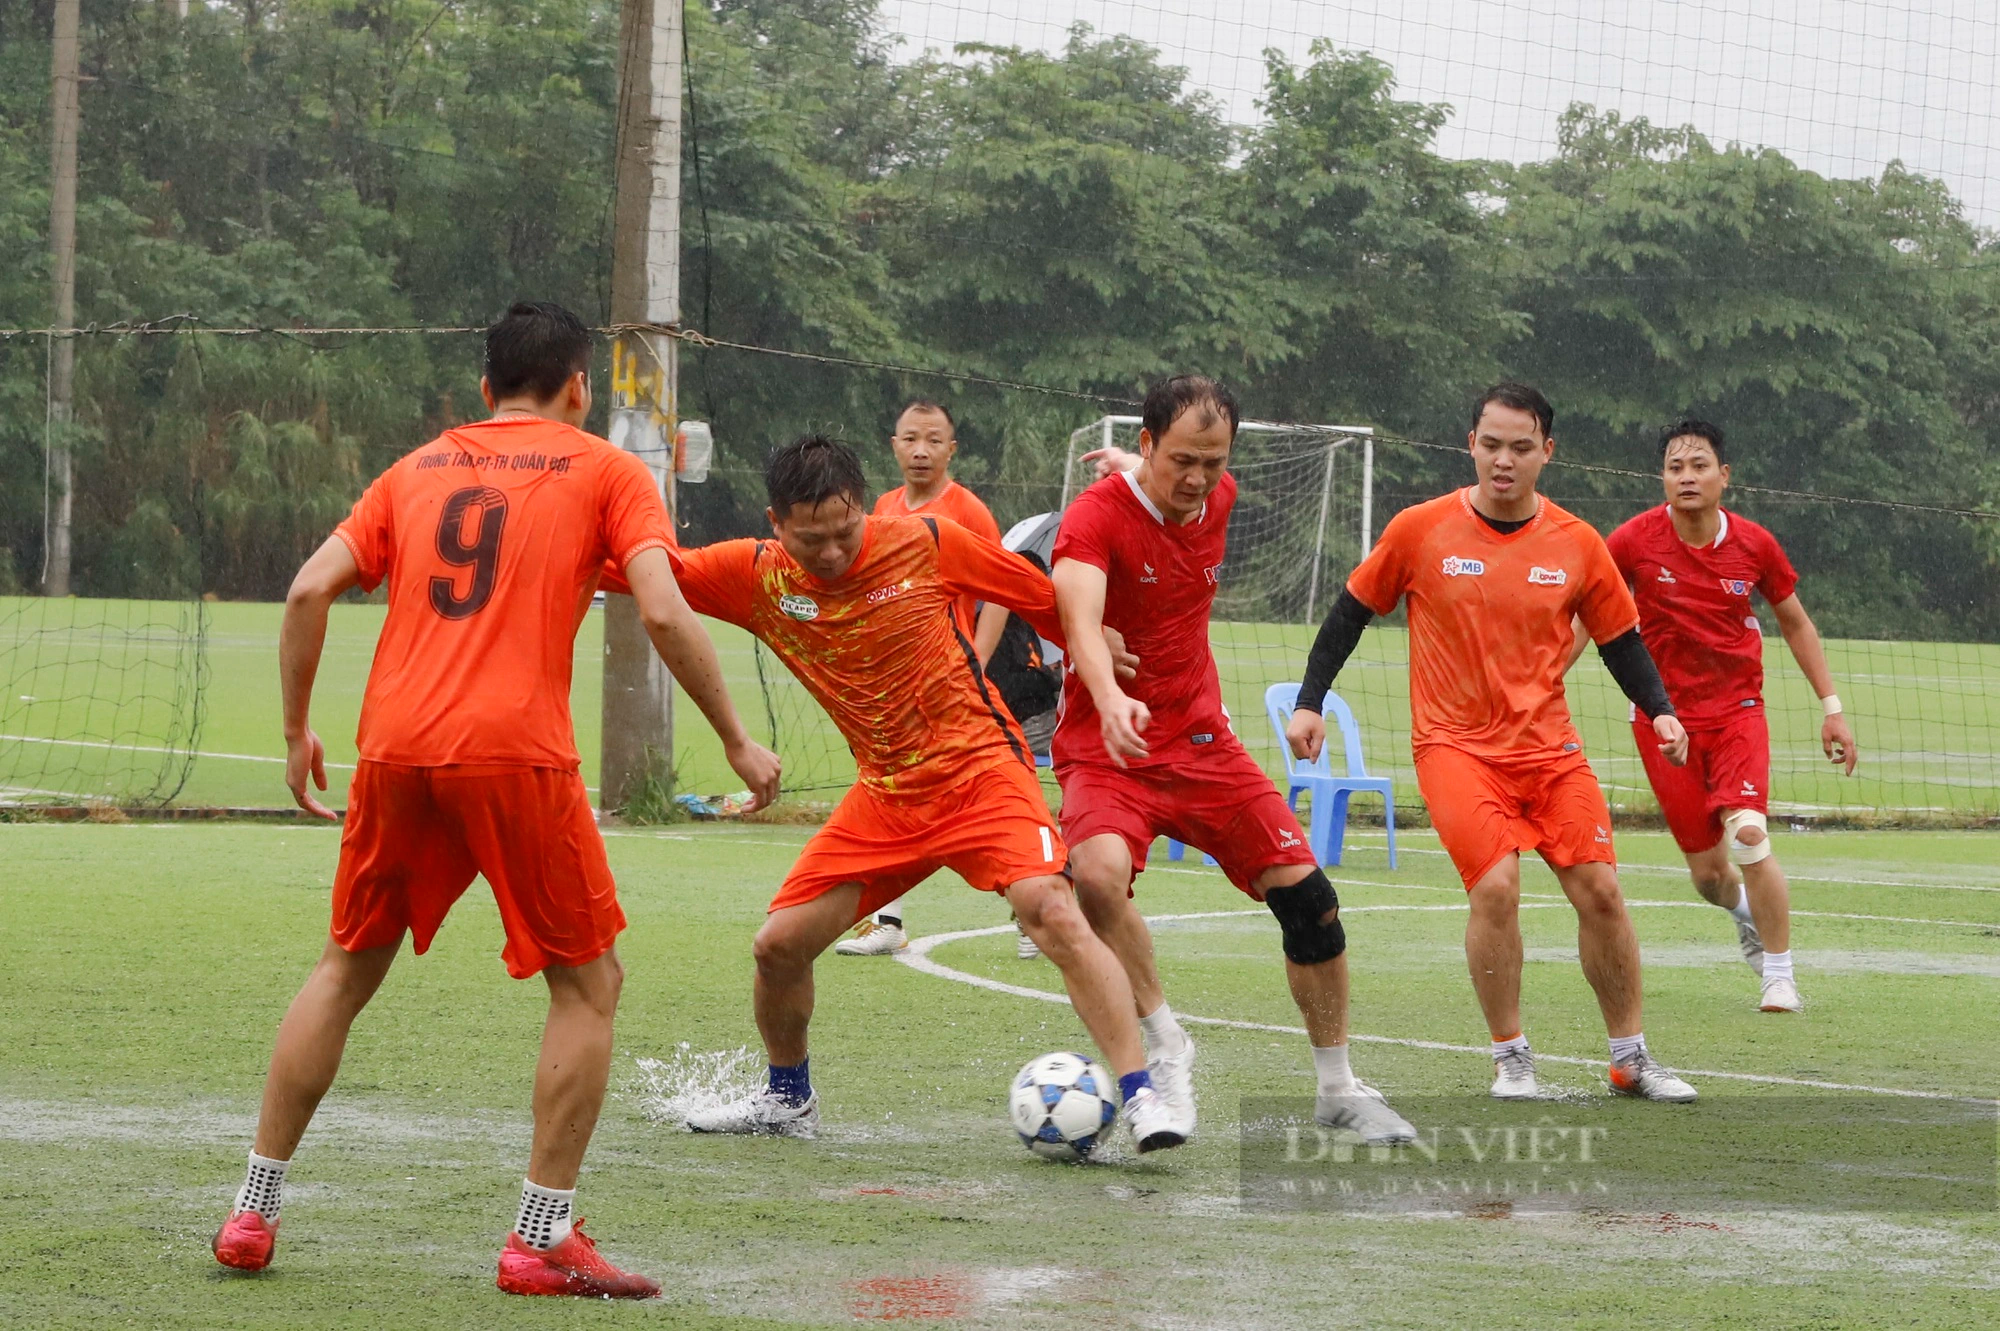 Loạt ảnh buổi thi đấu đầu tiên của giải bóng đá Báo NTNN/Dân Việt - tranh cúp mùa Thu lần thứ 14 - Ảnh 12.